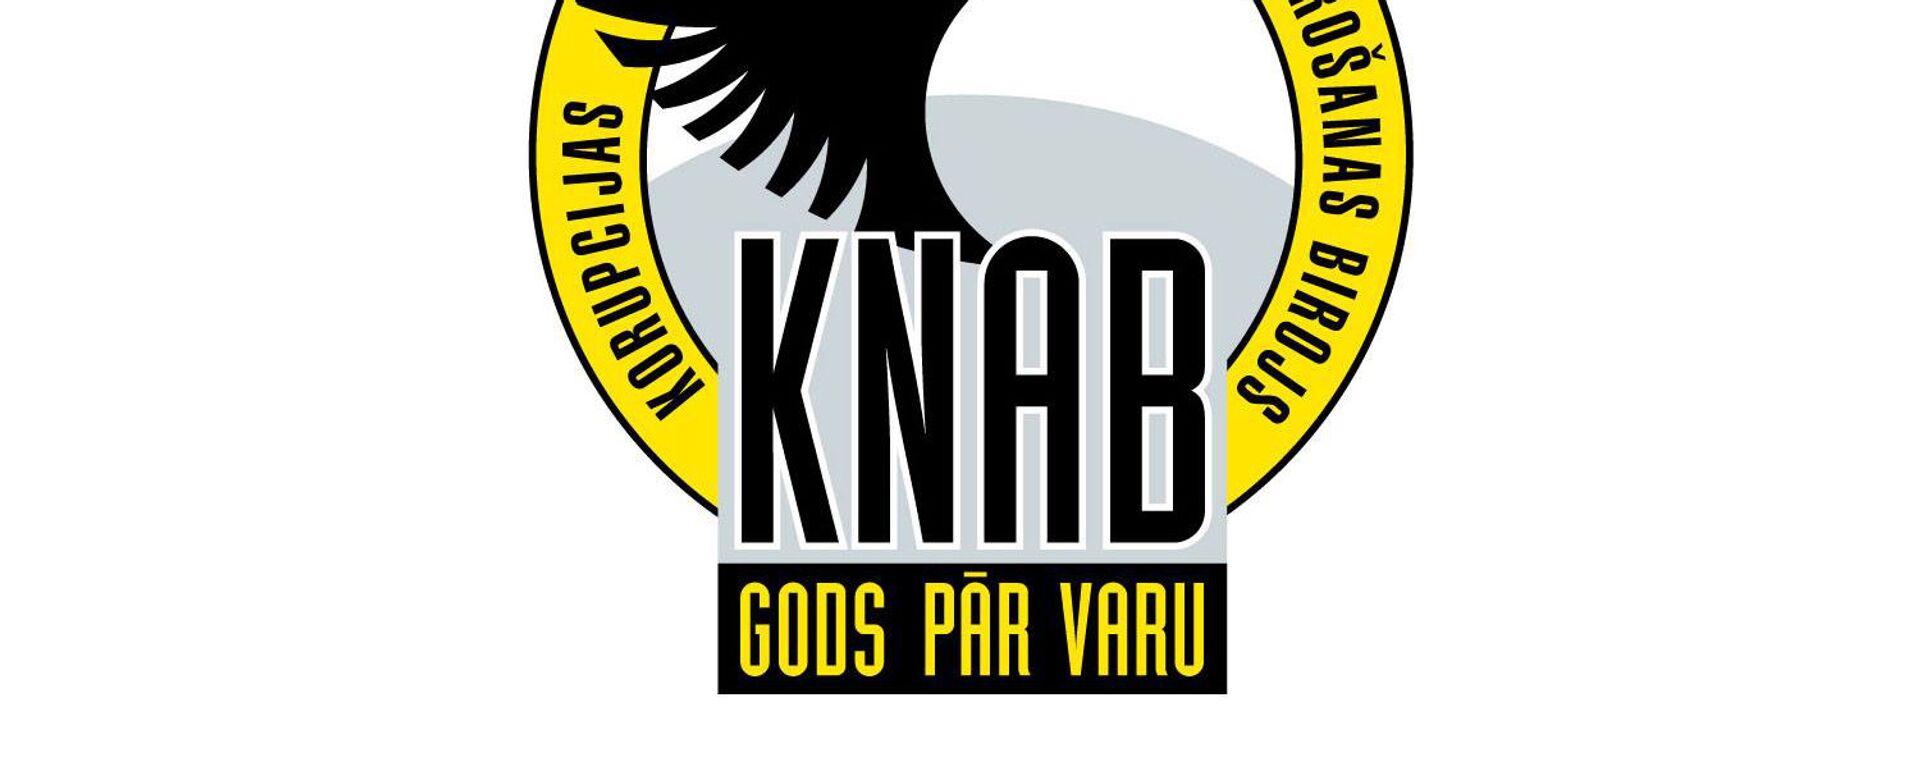 Логотип KNAB - бюро по предотвращению и борьбе с коррупцией - Sputnik Латвия, 1920, 20.07.2016